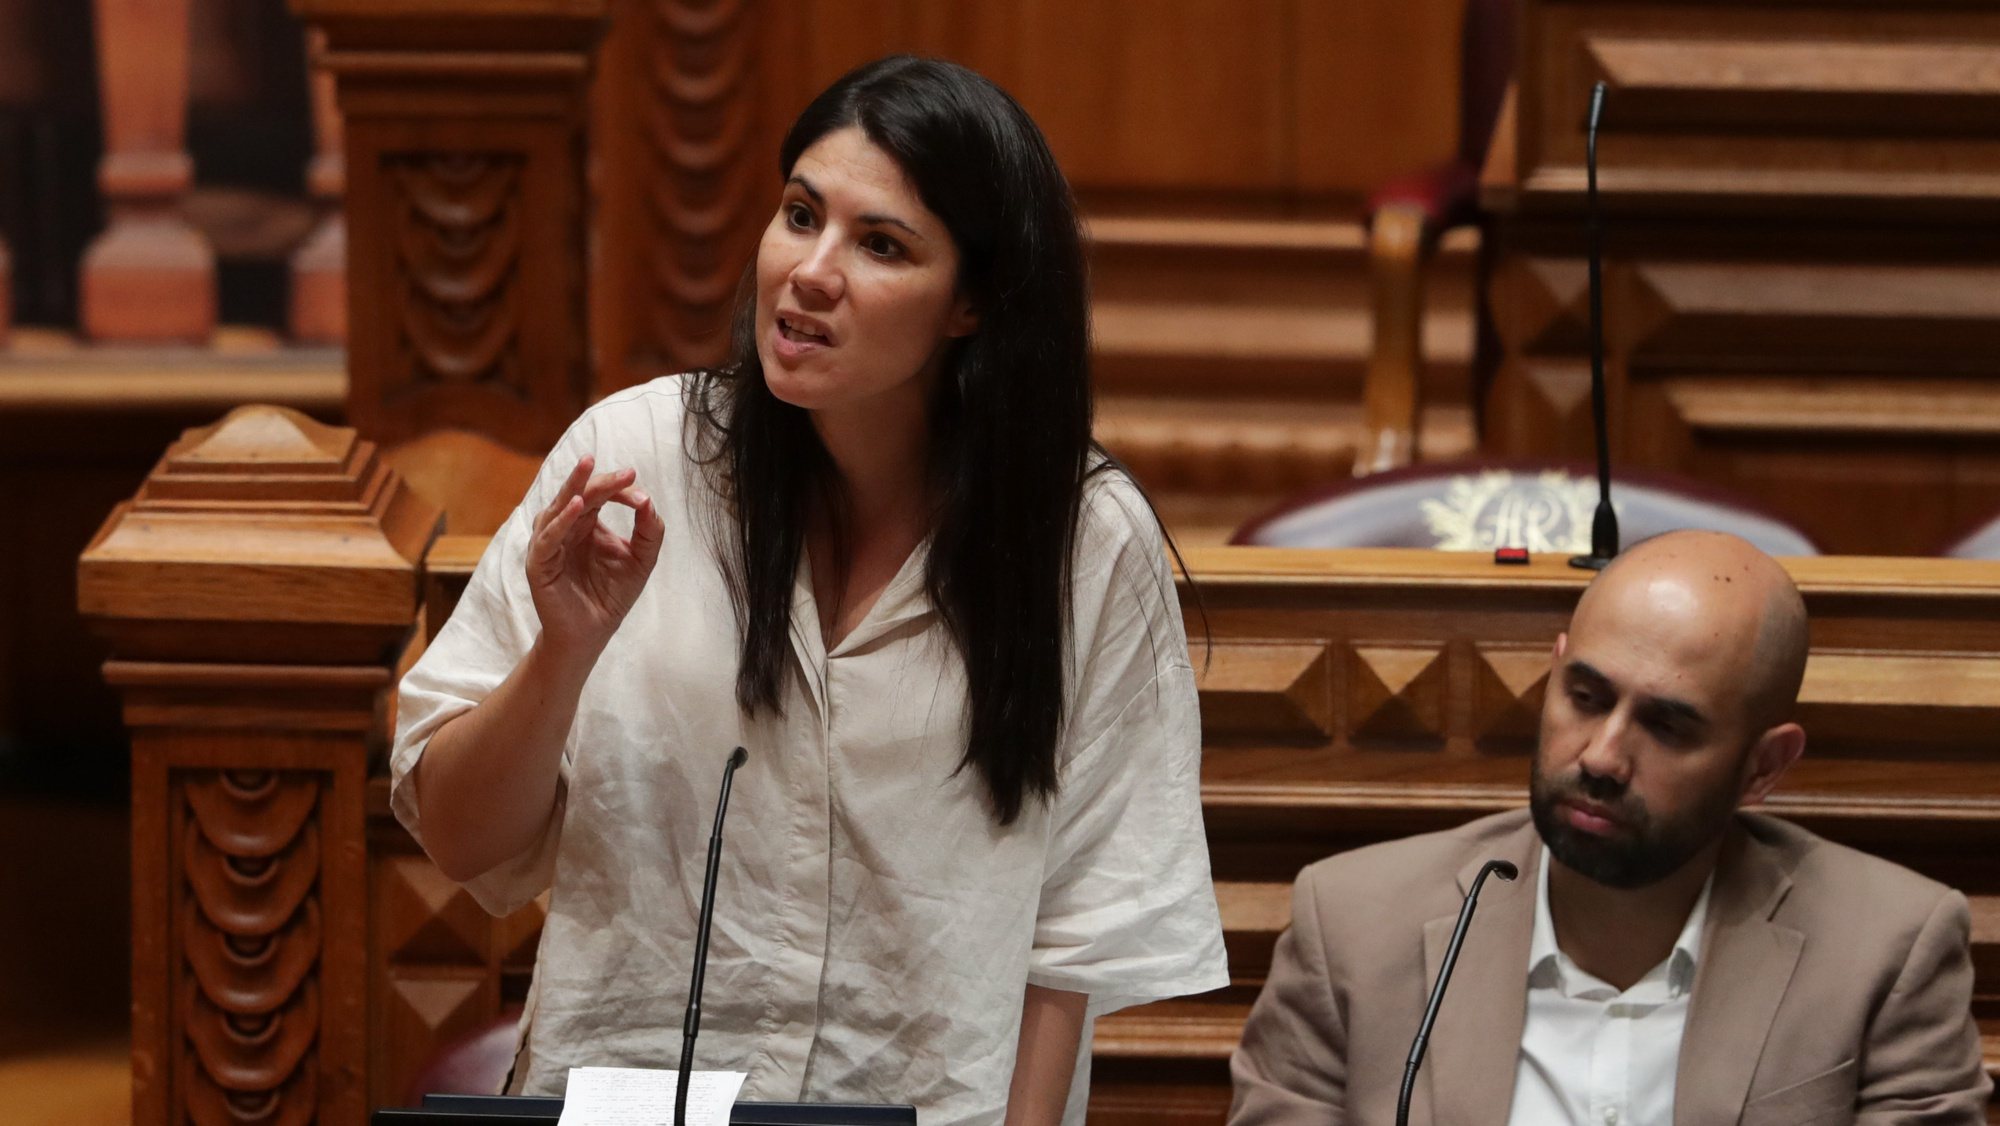 A deputada do Bloco de Esquerda (BE), Mariana Mortágua, intervém durante o debate sobre habitação na Comissão Permanente na Assembleia da República em Lisboa, 07 de setembro 2022. TIAGO PETINGA/LUSA